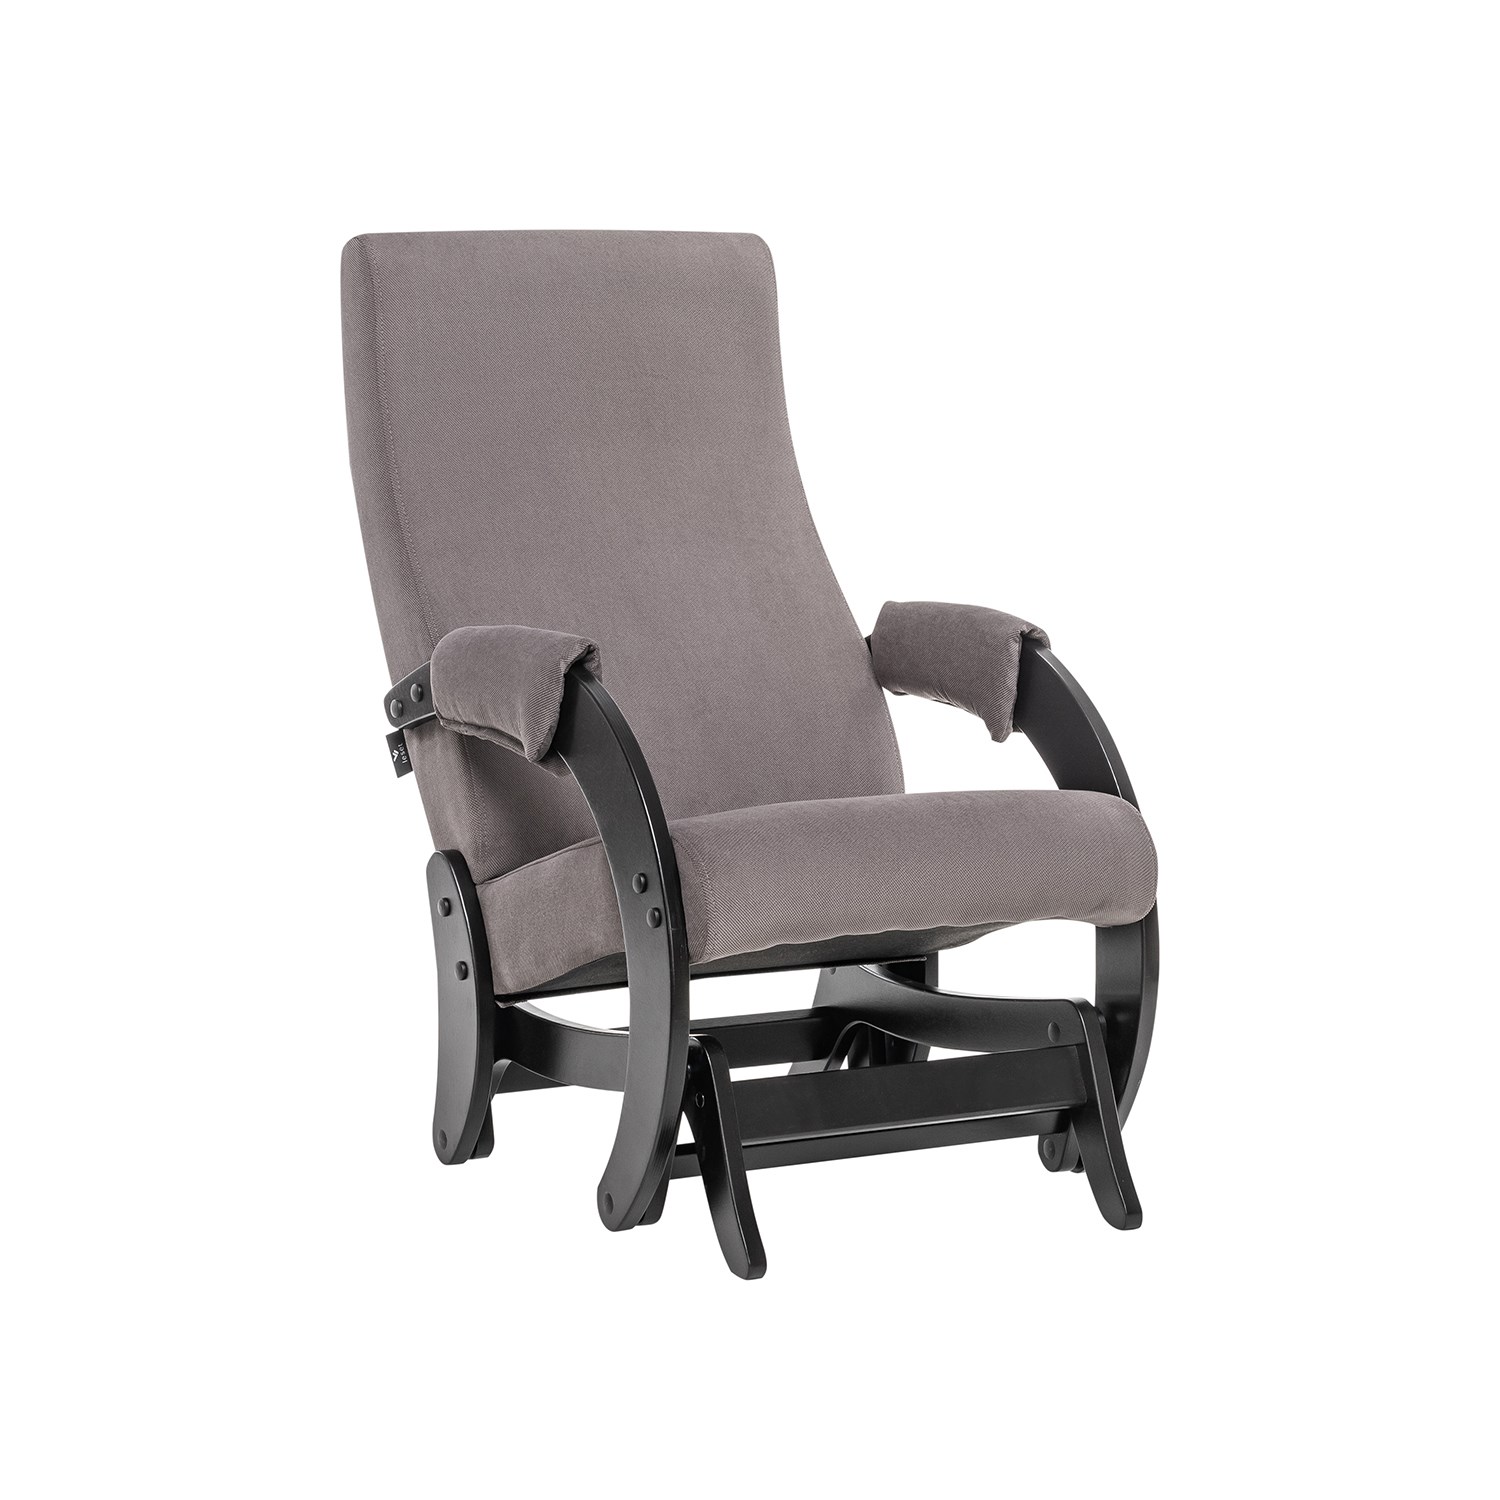 Кресло-глайдер Мебель Импэкс Модель 68 Венге/Ткань Verona Antrazite Grey